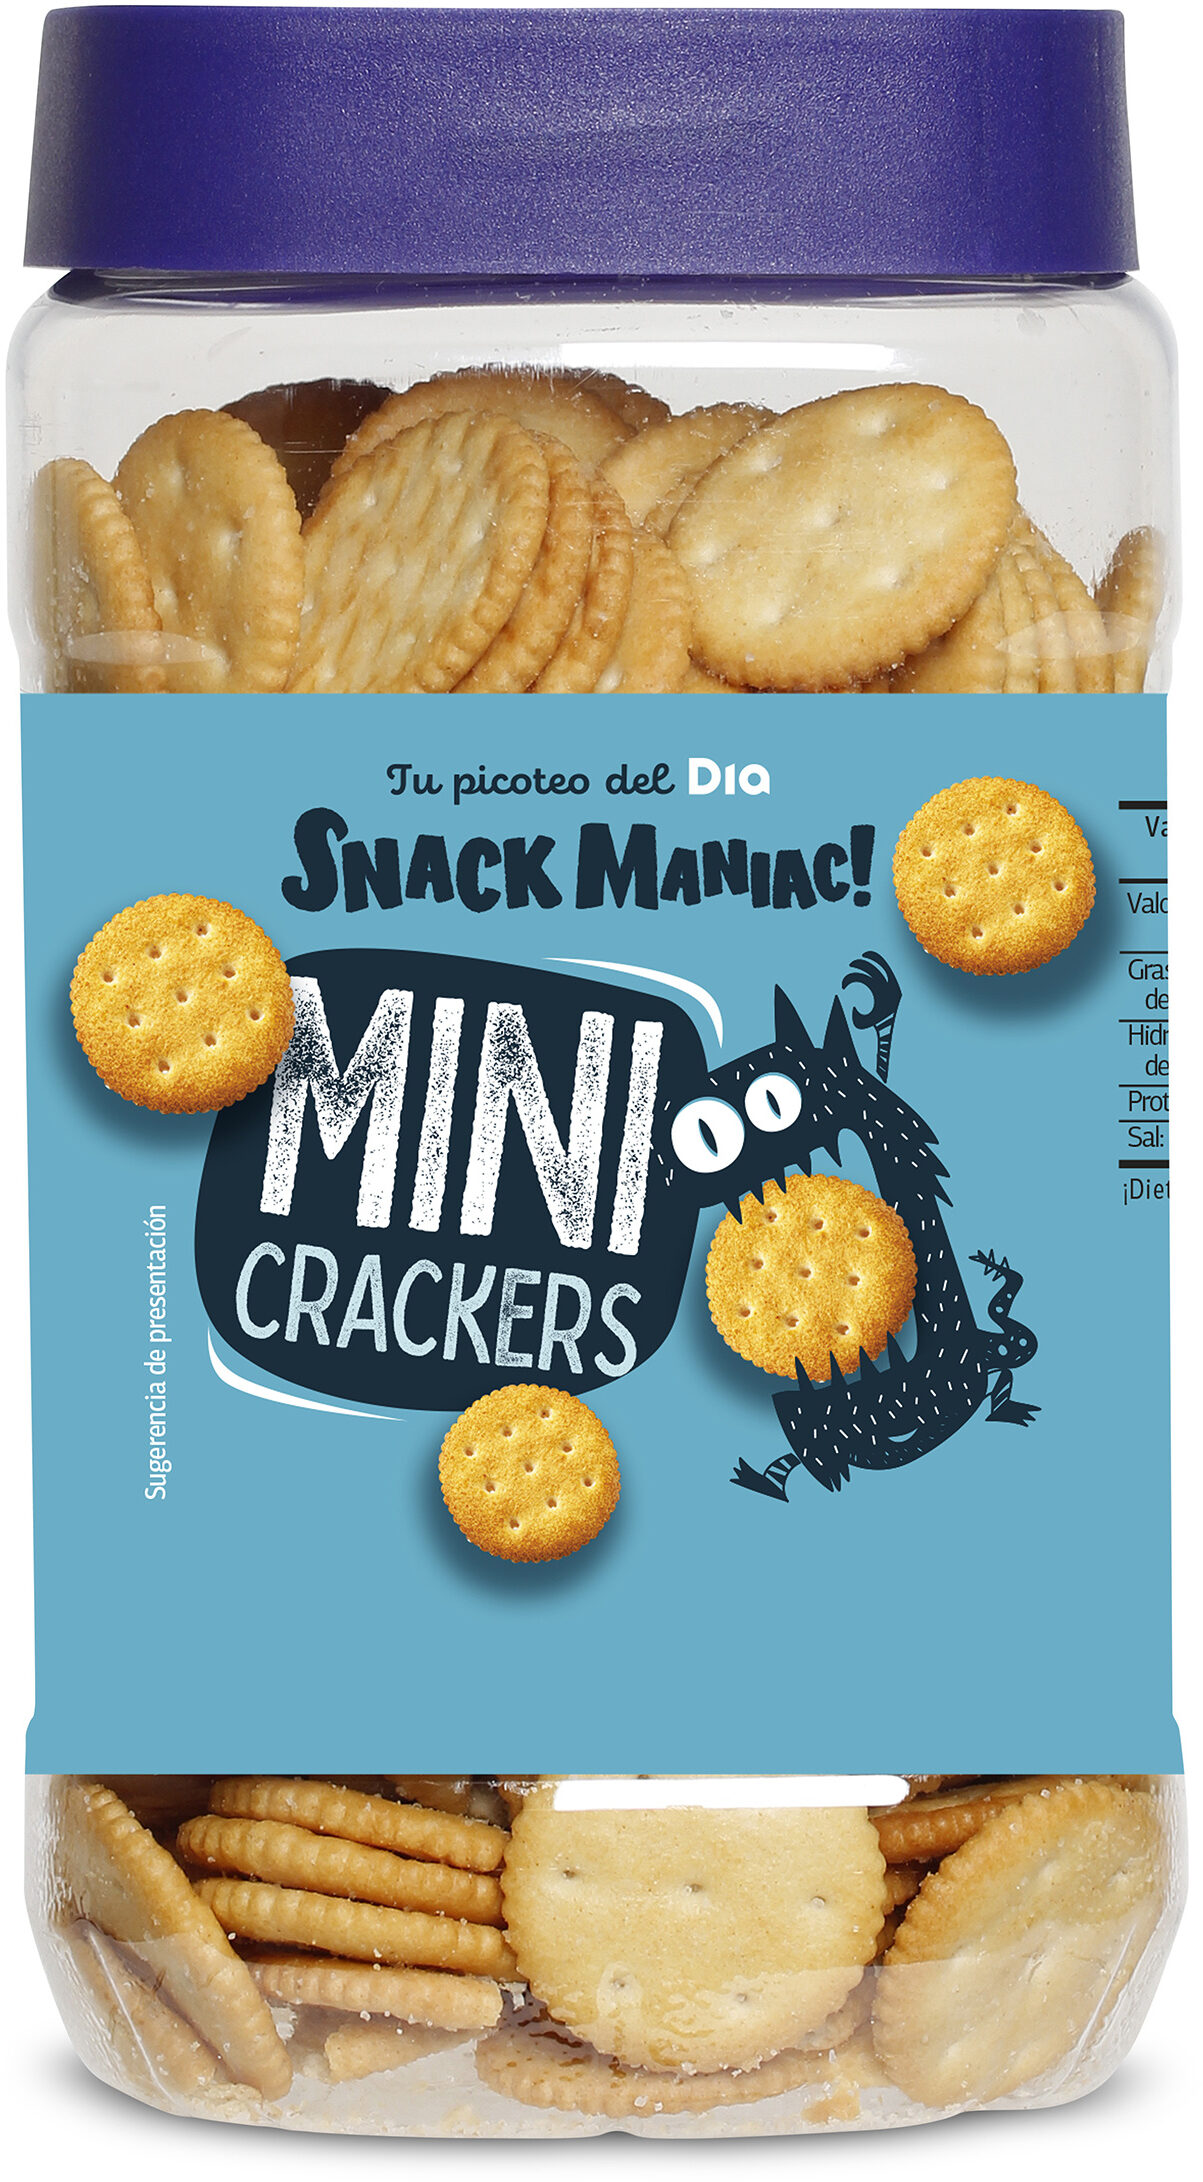 Mini galletas saladas crackers - Producte - es